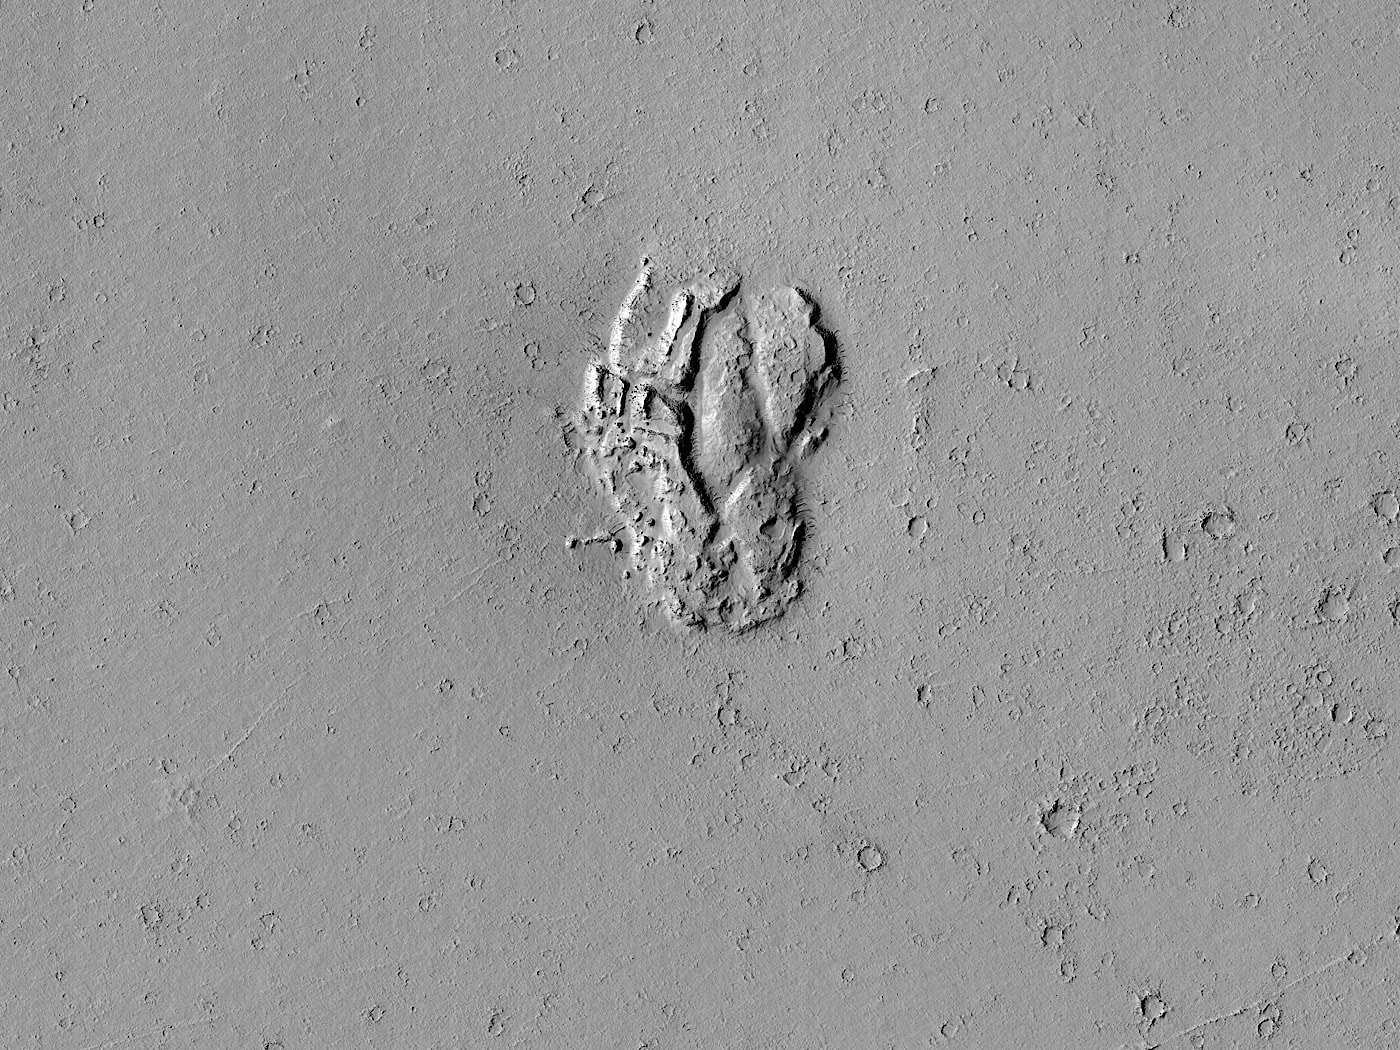 La formazione rocciosa su Marte sembra una cupola solitaria perduta vicino a un cratere dalla forma strana